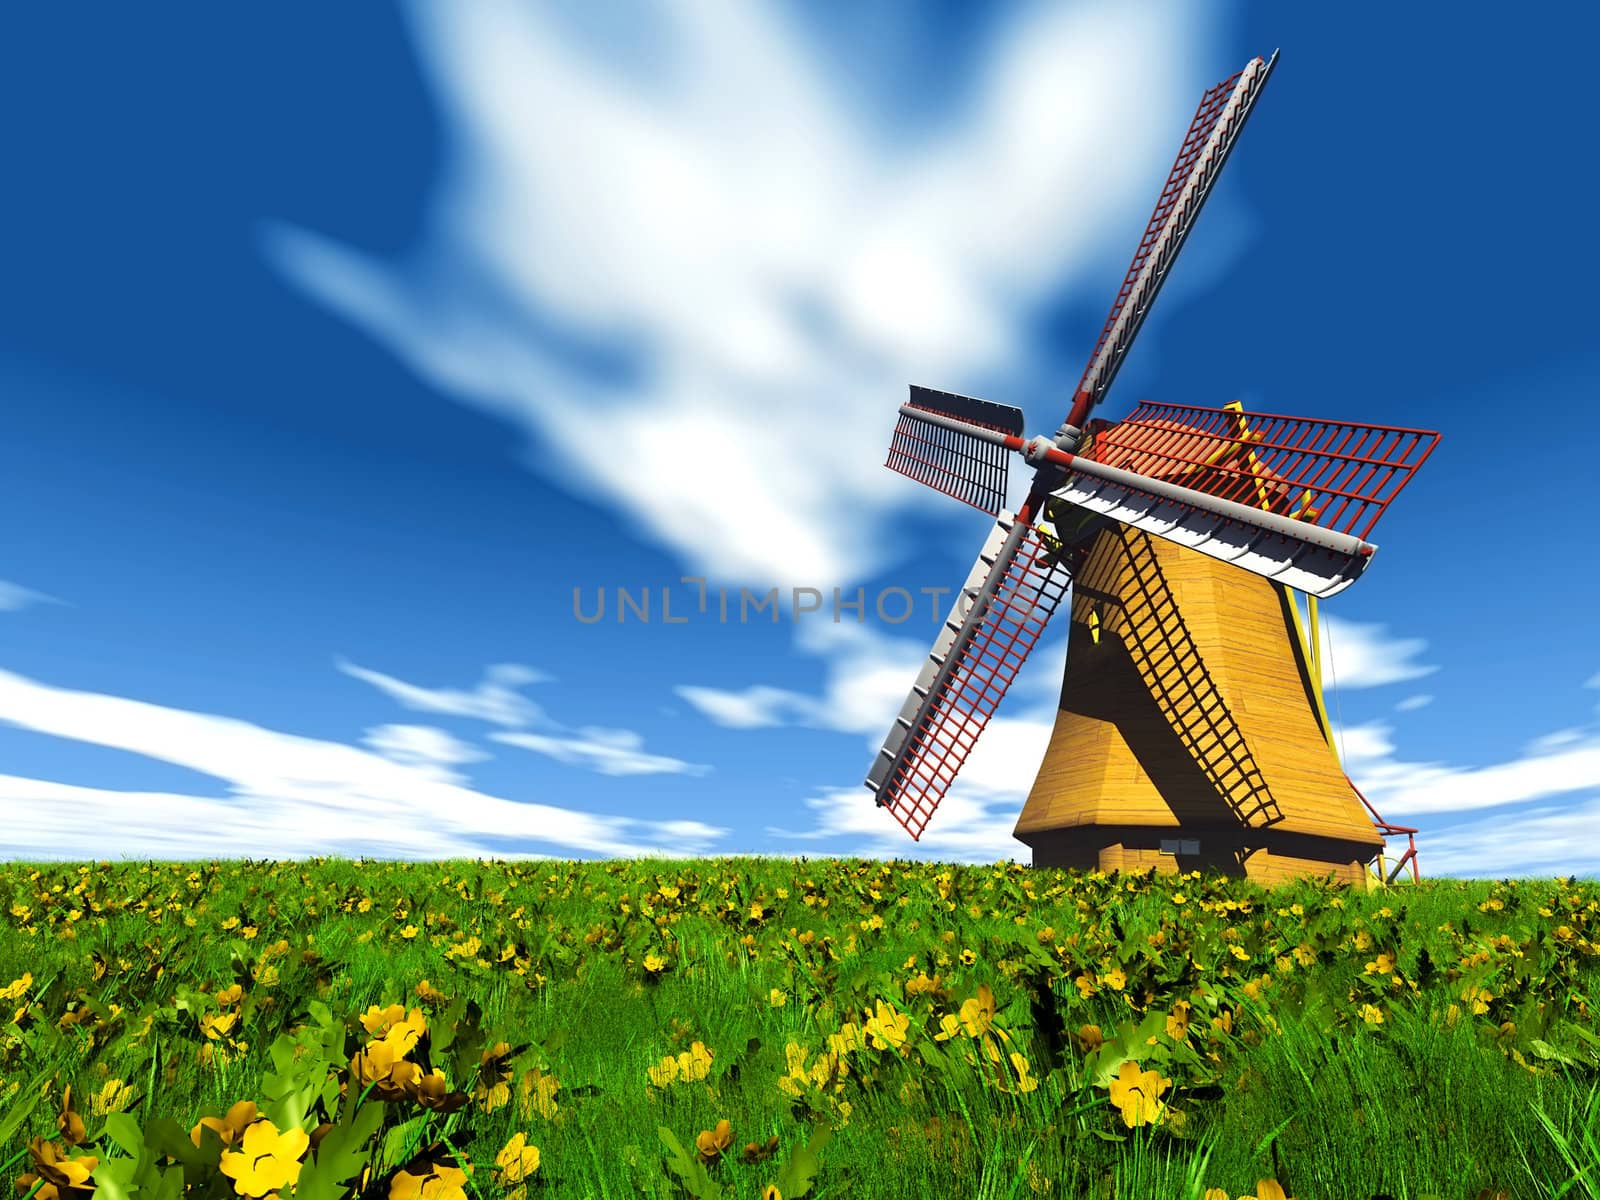 windmill by njaj